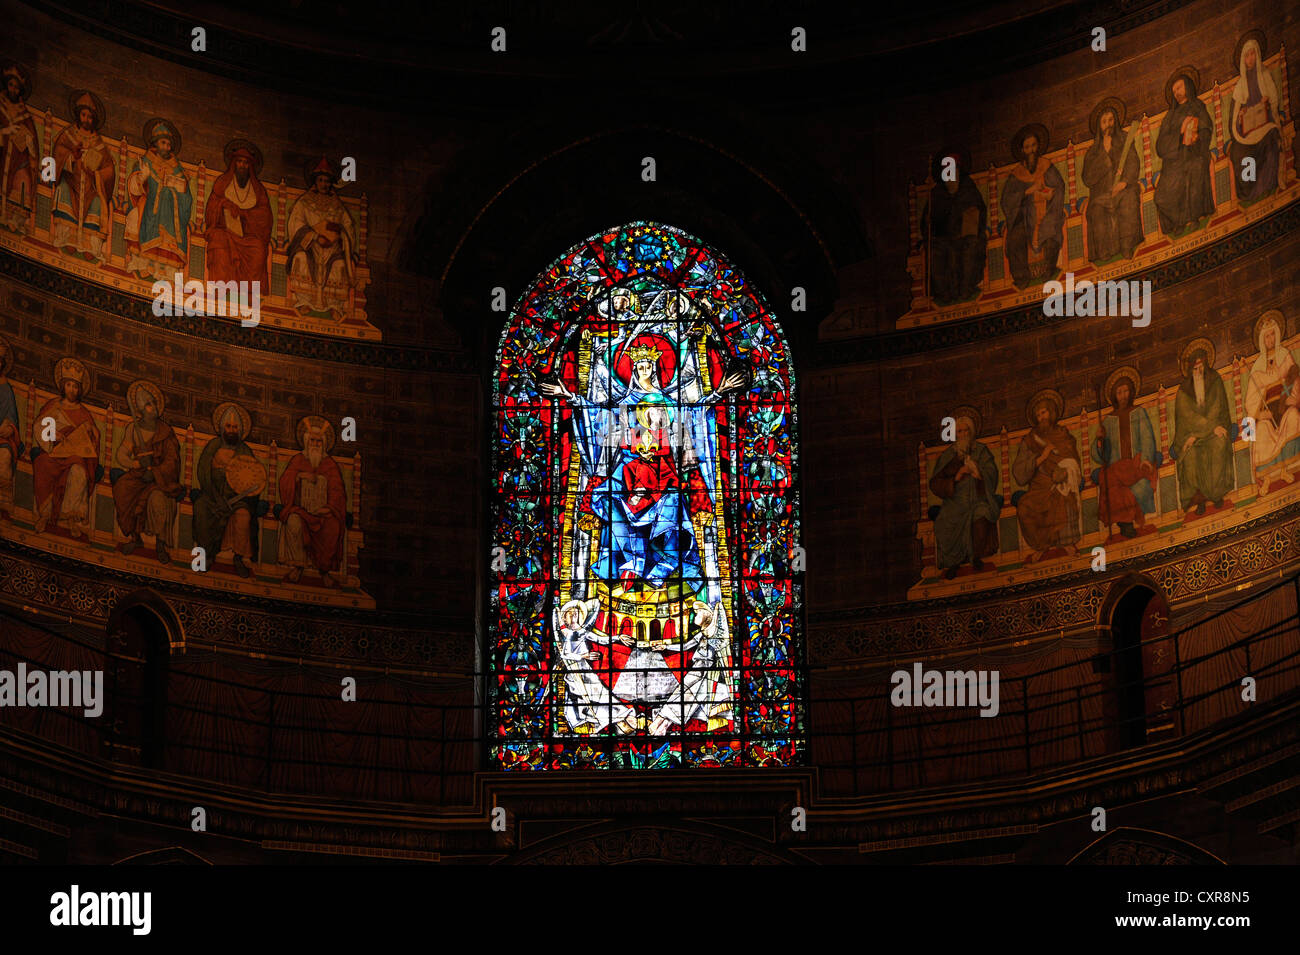 Choeur roman abside avec une fresque de style néo-byzantin, choeur, vue de l'intérieur, la cathédrale de Strasbourg, la cathédrale de Notre Dame de Banque D'Images